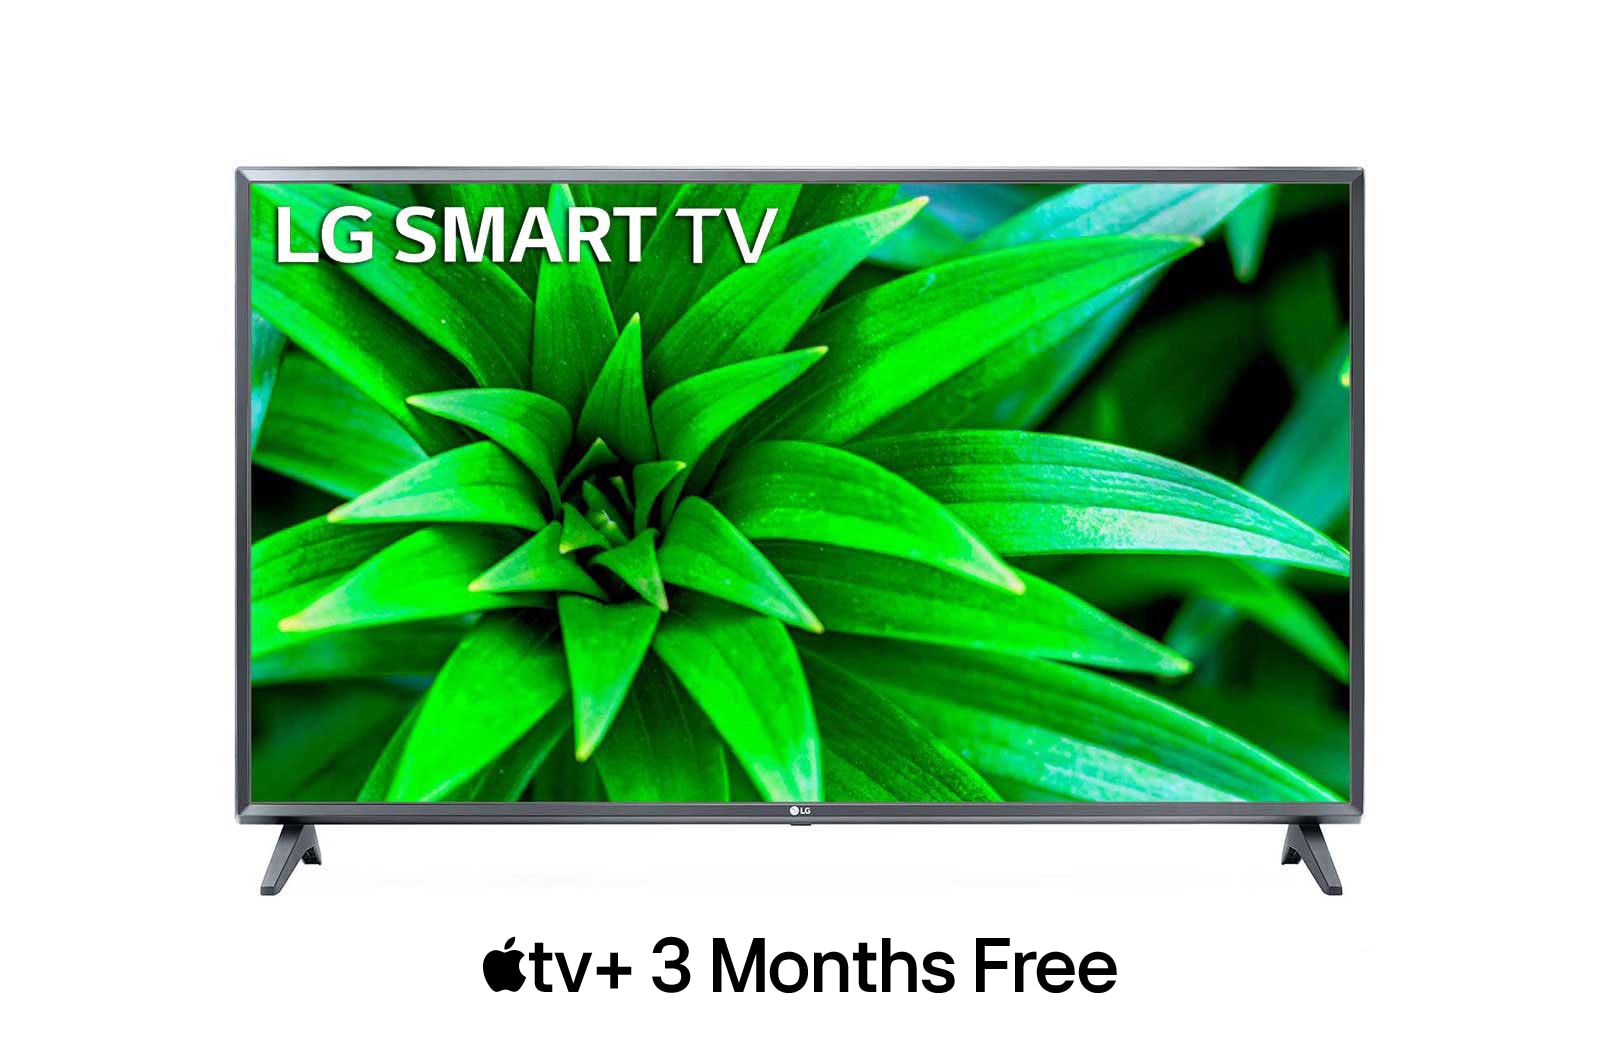 LG LM56 43 (108.22 cm) Smart FHD TV, 43LM5600PTC